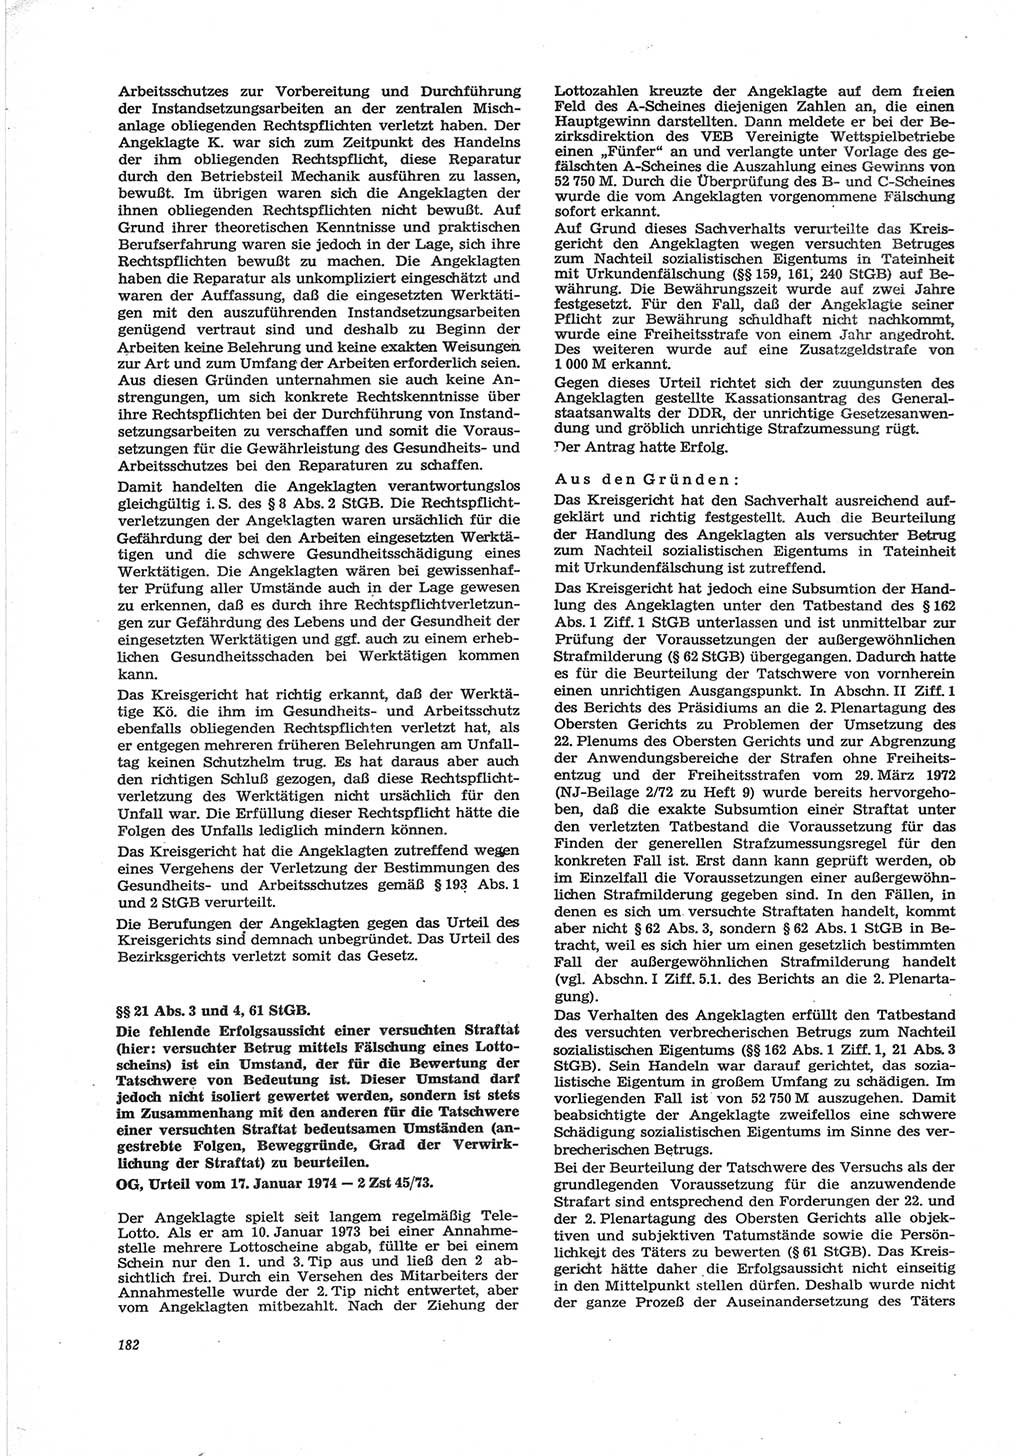 Neue Justiz (NJ), Zeitschrift für Recht und Rechtswissenschaft [Deutsche Demokratische Republik (DDR)], 28. Jahrgang 1974, Seite 182 (NJ DDR 1974, S. 182)